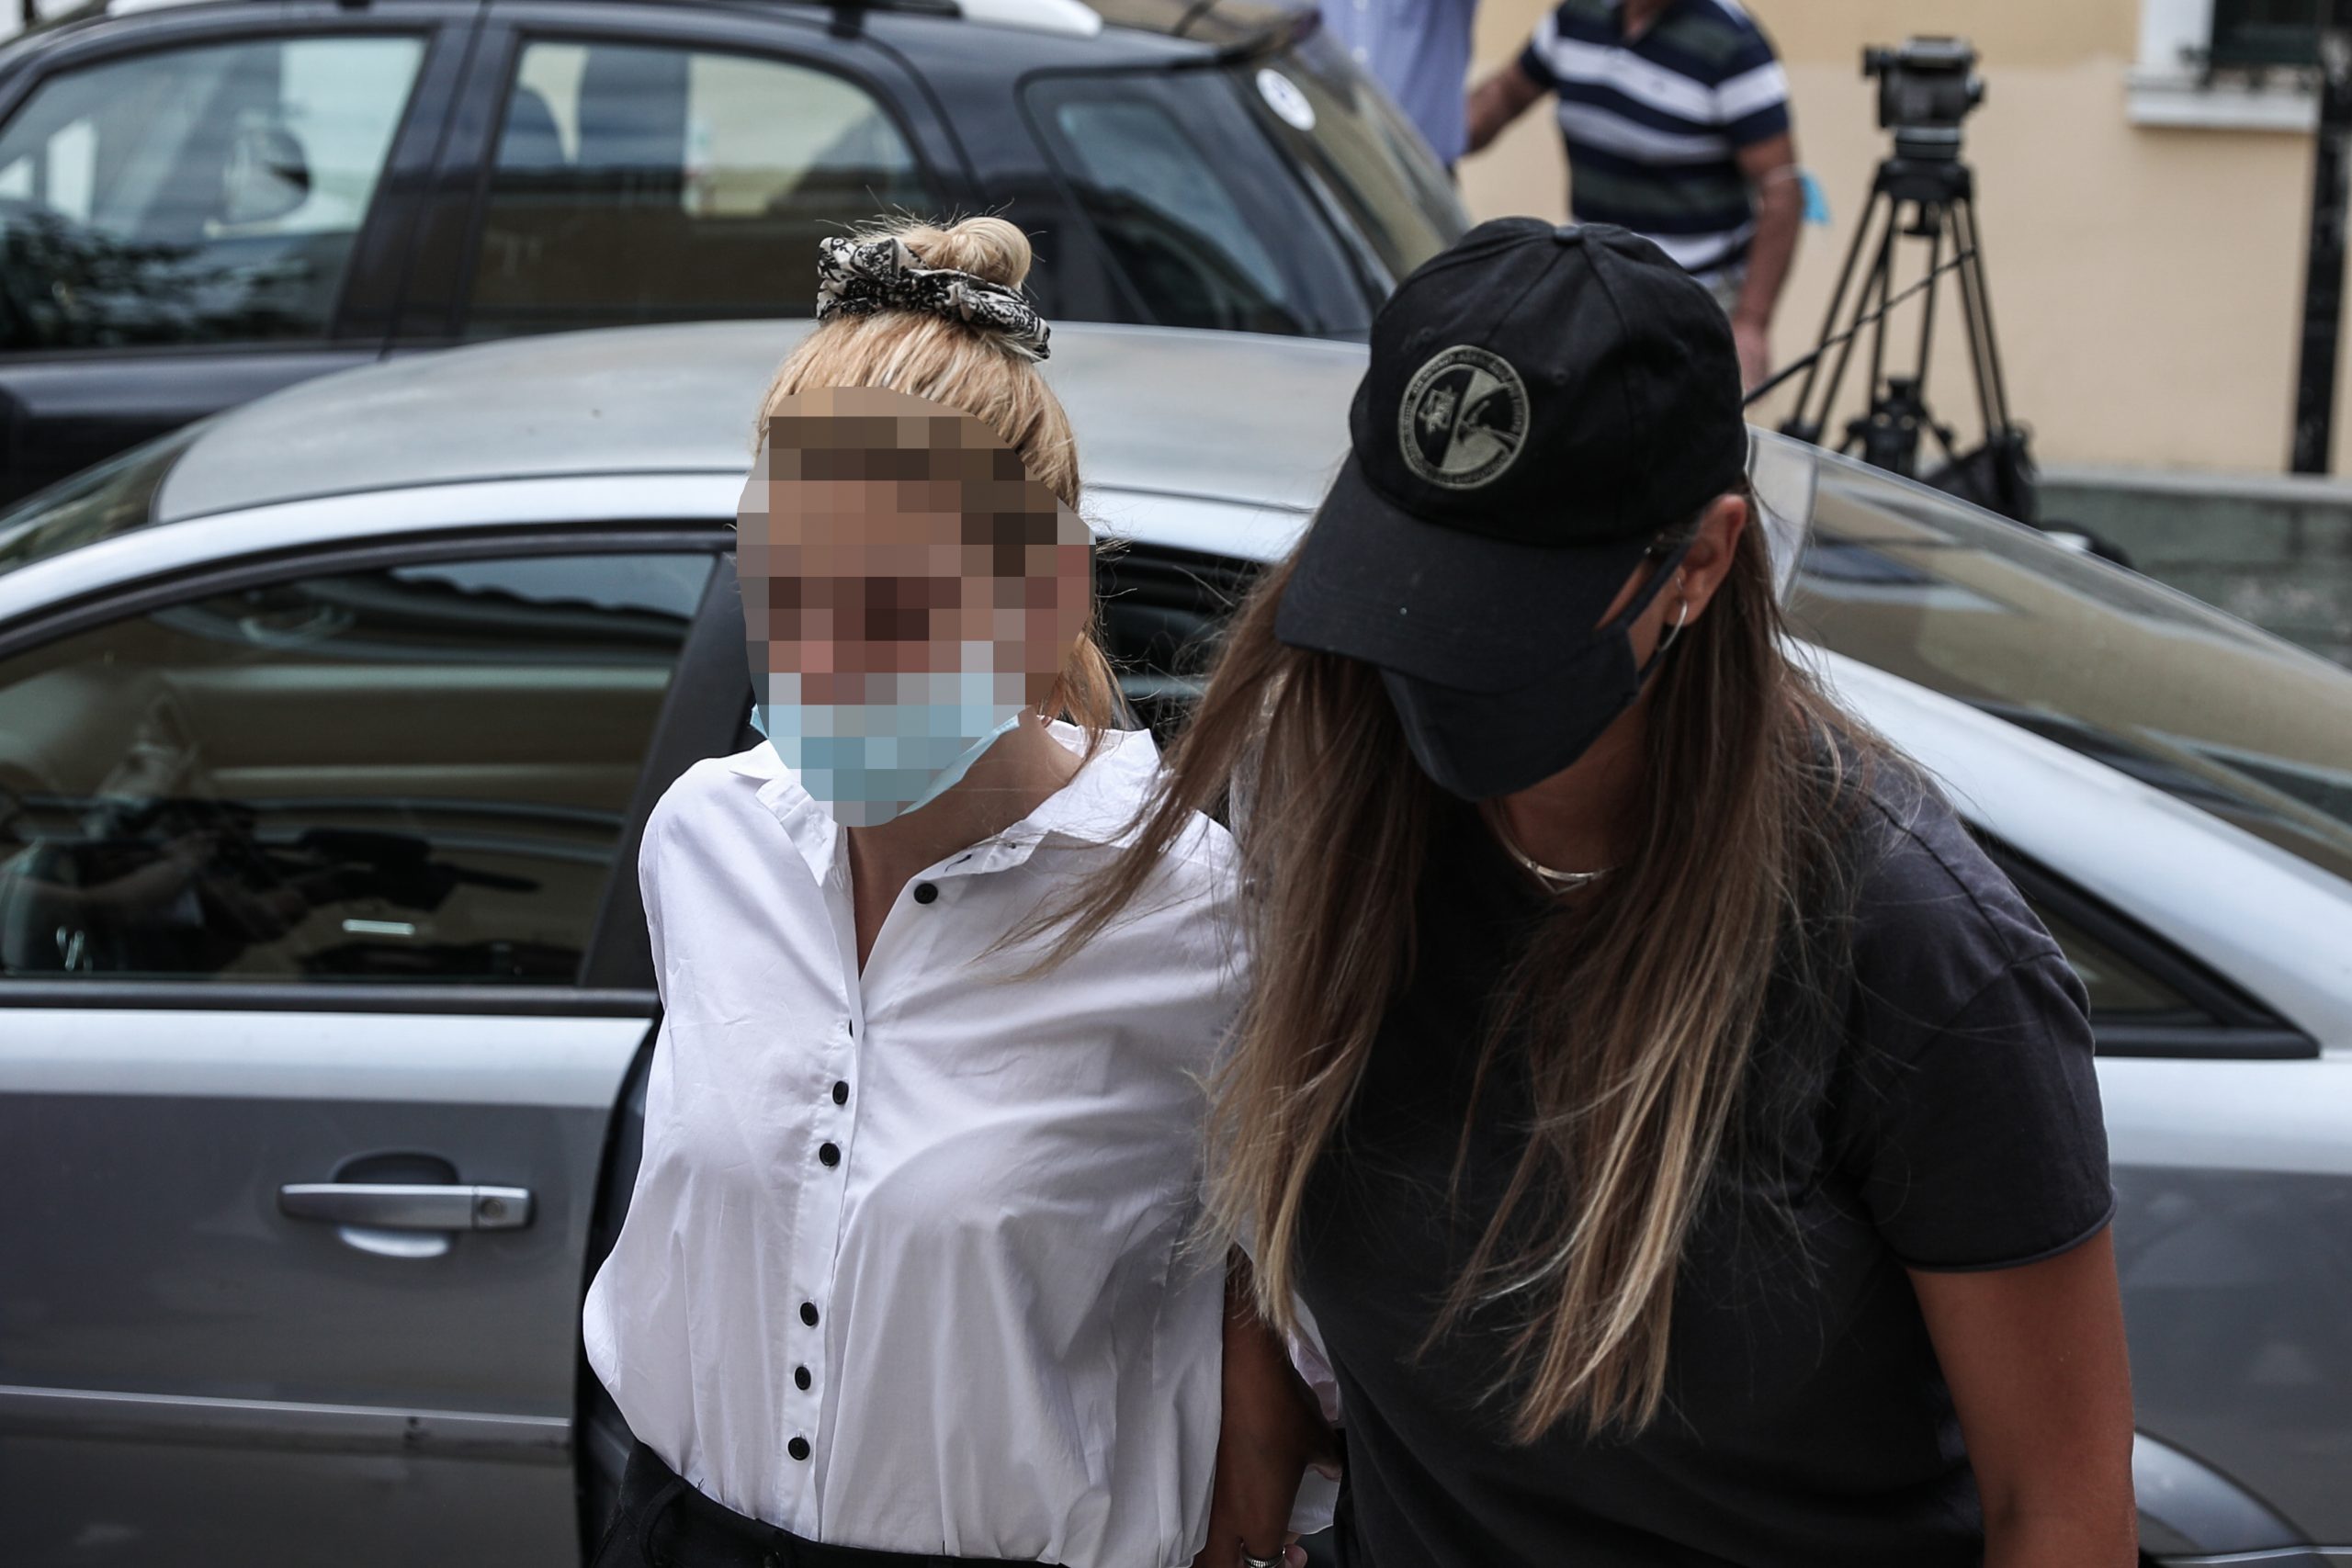 Προφυλακιστέοι το μοντέλο & ο σύντροφός της για τα 7,8 κιλά κοκαΐνης